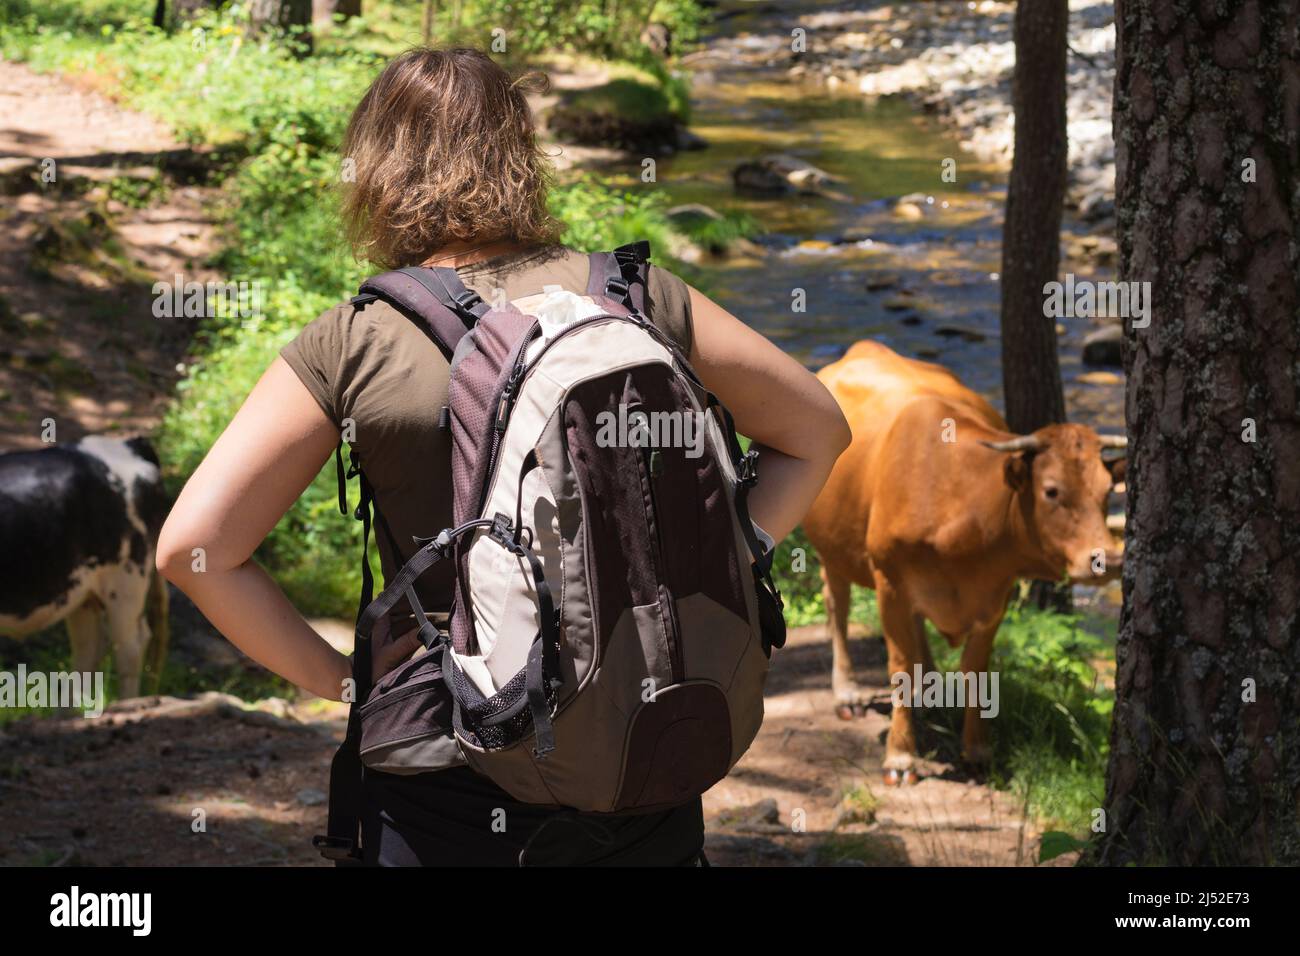 Mujer rubia de pelo rizado con su espalda girada y sus manos descansando en sus caderas, llevando una mochila, viendo una vaca marrón pastando en un fore de montaña Foto de stock